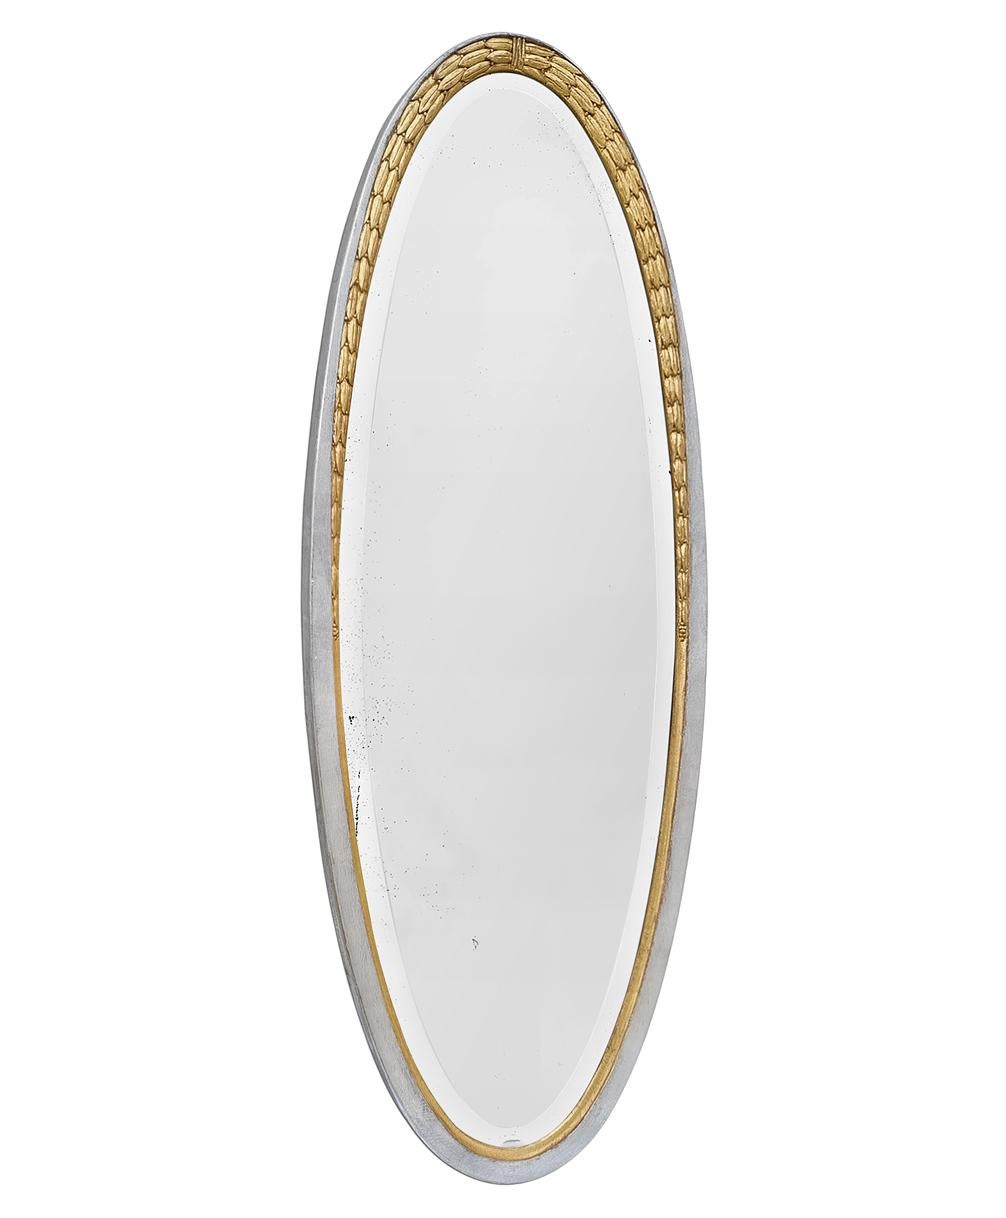 Très grand miroir ovale Art Déco français à décor de feuilles de laurier, datant de 1928. Magnifique cadre ovale ancien en bois sculpté doré et argenté (Redorure à la feuille par l'ATELIER RTCD Paris). Largeur du cadre antique :  5,5 cm / 2,16 in.